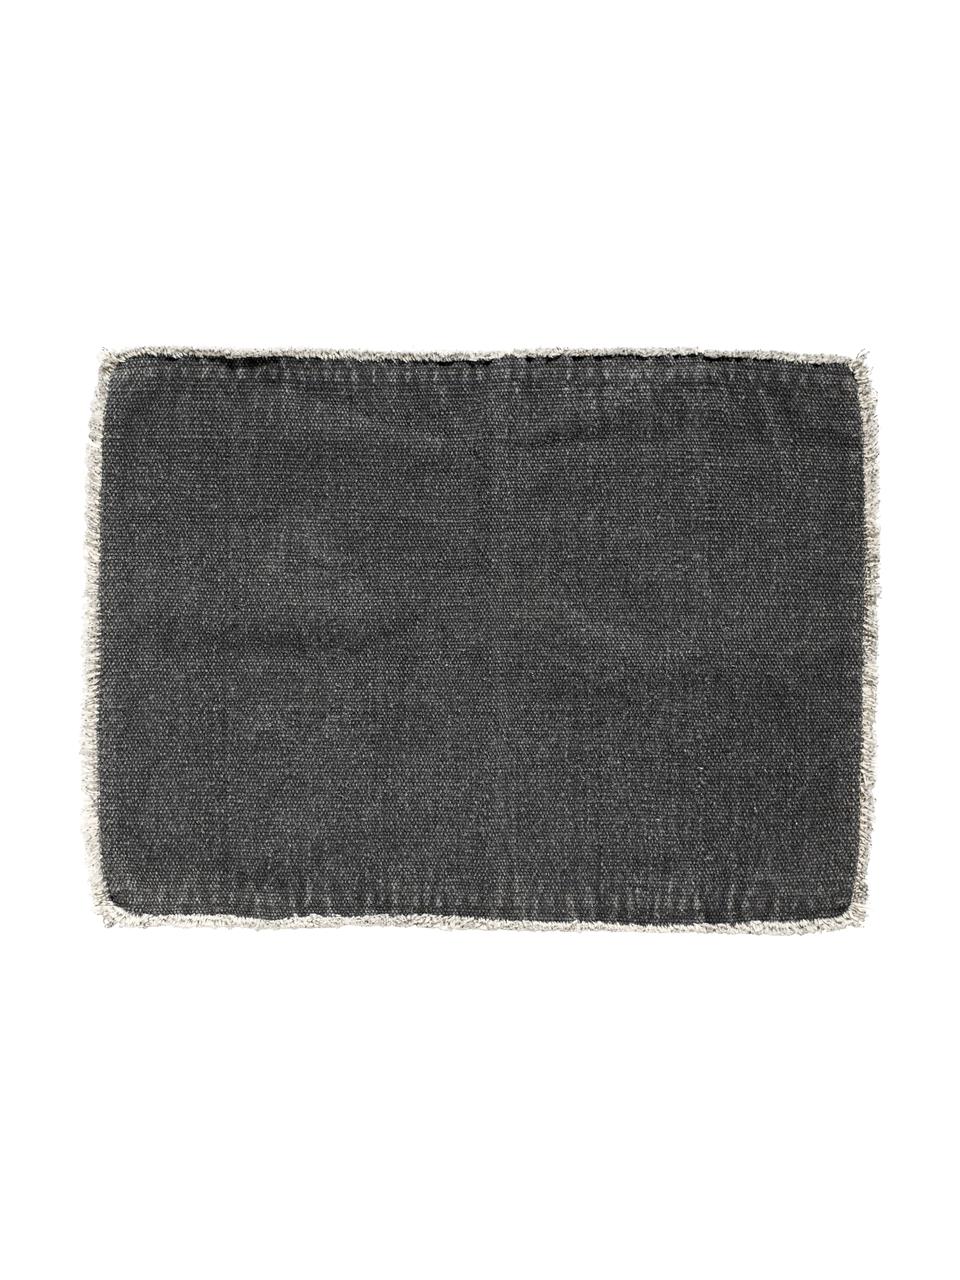 Manteles individuales de algoón Edge, 6 uds., Mezcla de algodón con StoneWash (lavado a piedra), Gris oscuro, An 35 x L 48 cm